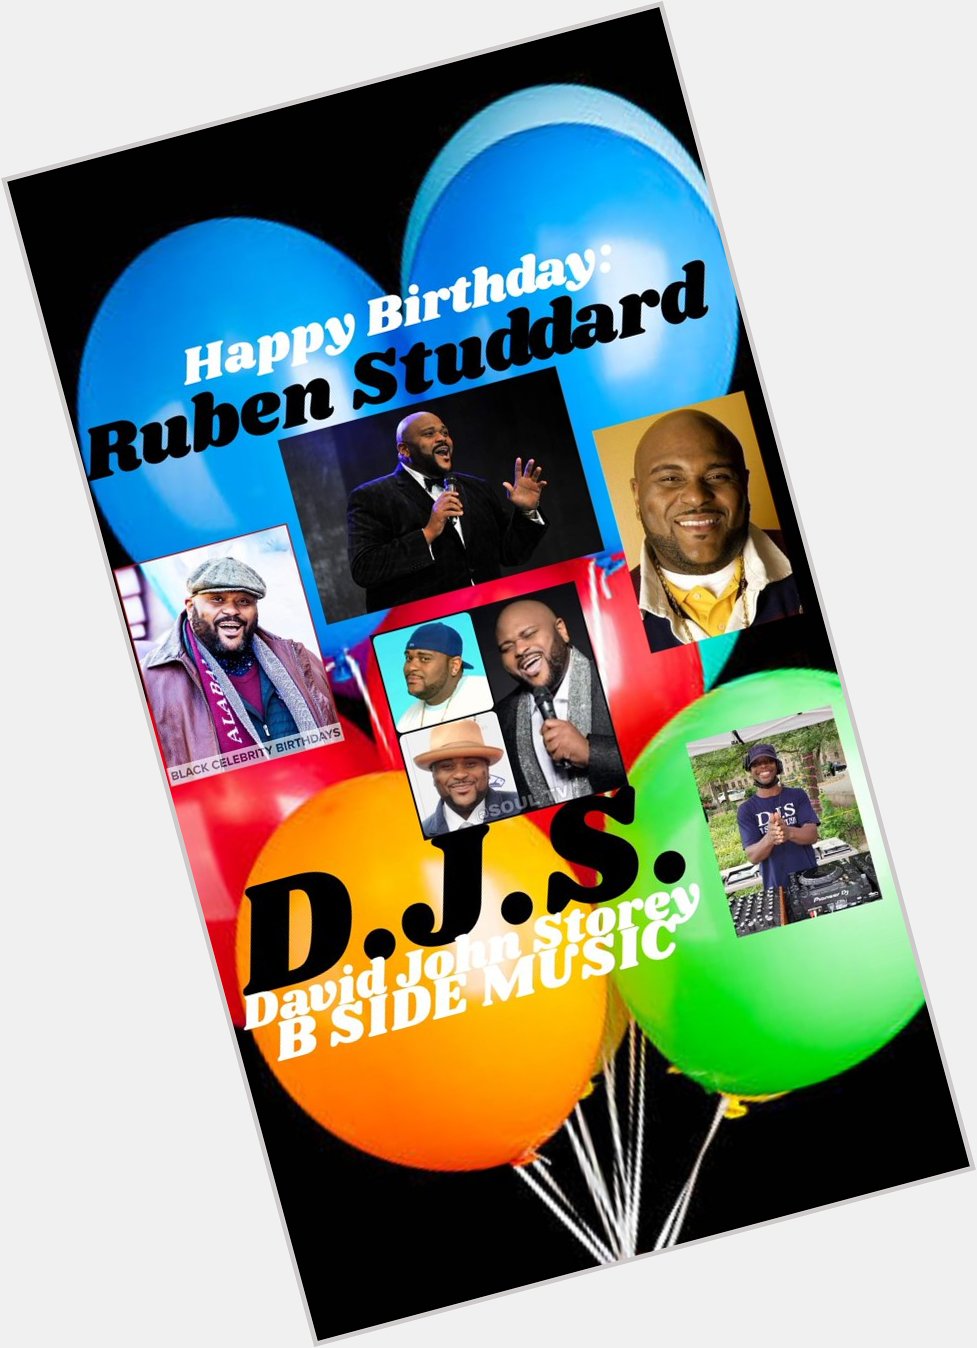 I(D.J.S.)\"David John Storey\" saying Happy Birthday to singer: \"RUBEN STUDDARD\"!!! 